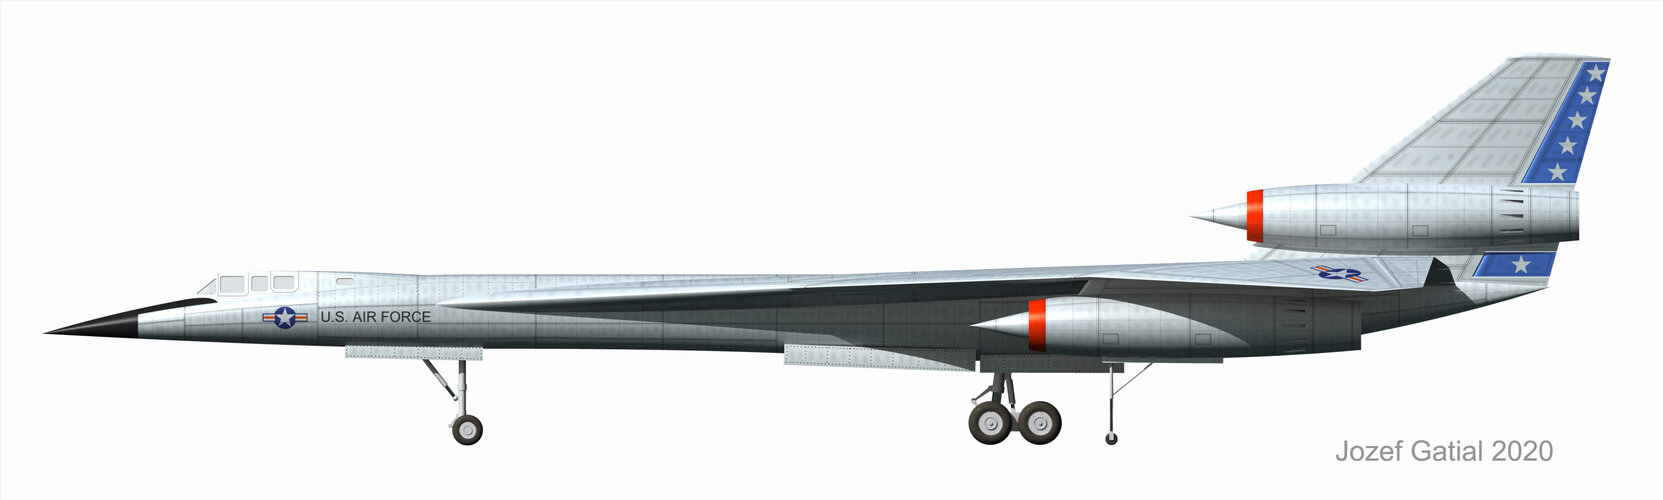 Lockheed AMSA 1968 side.jpg